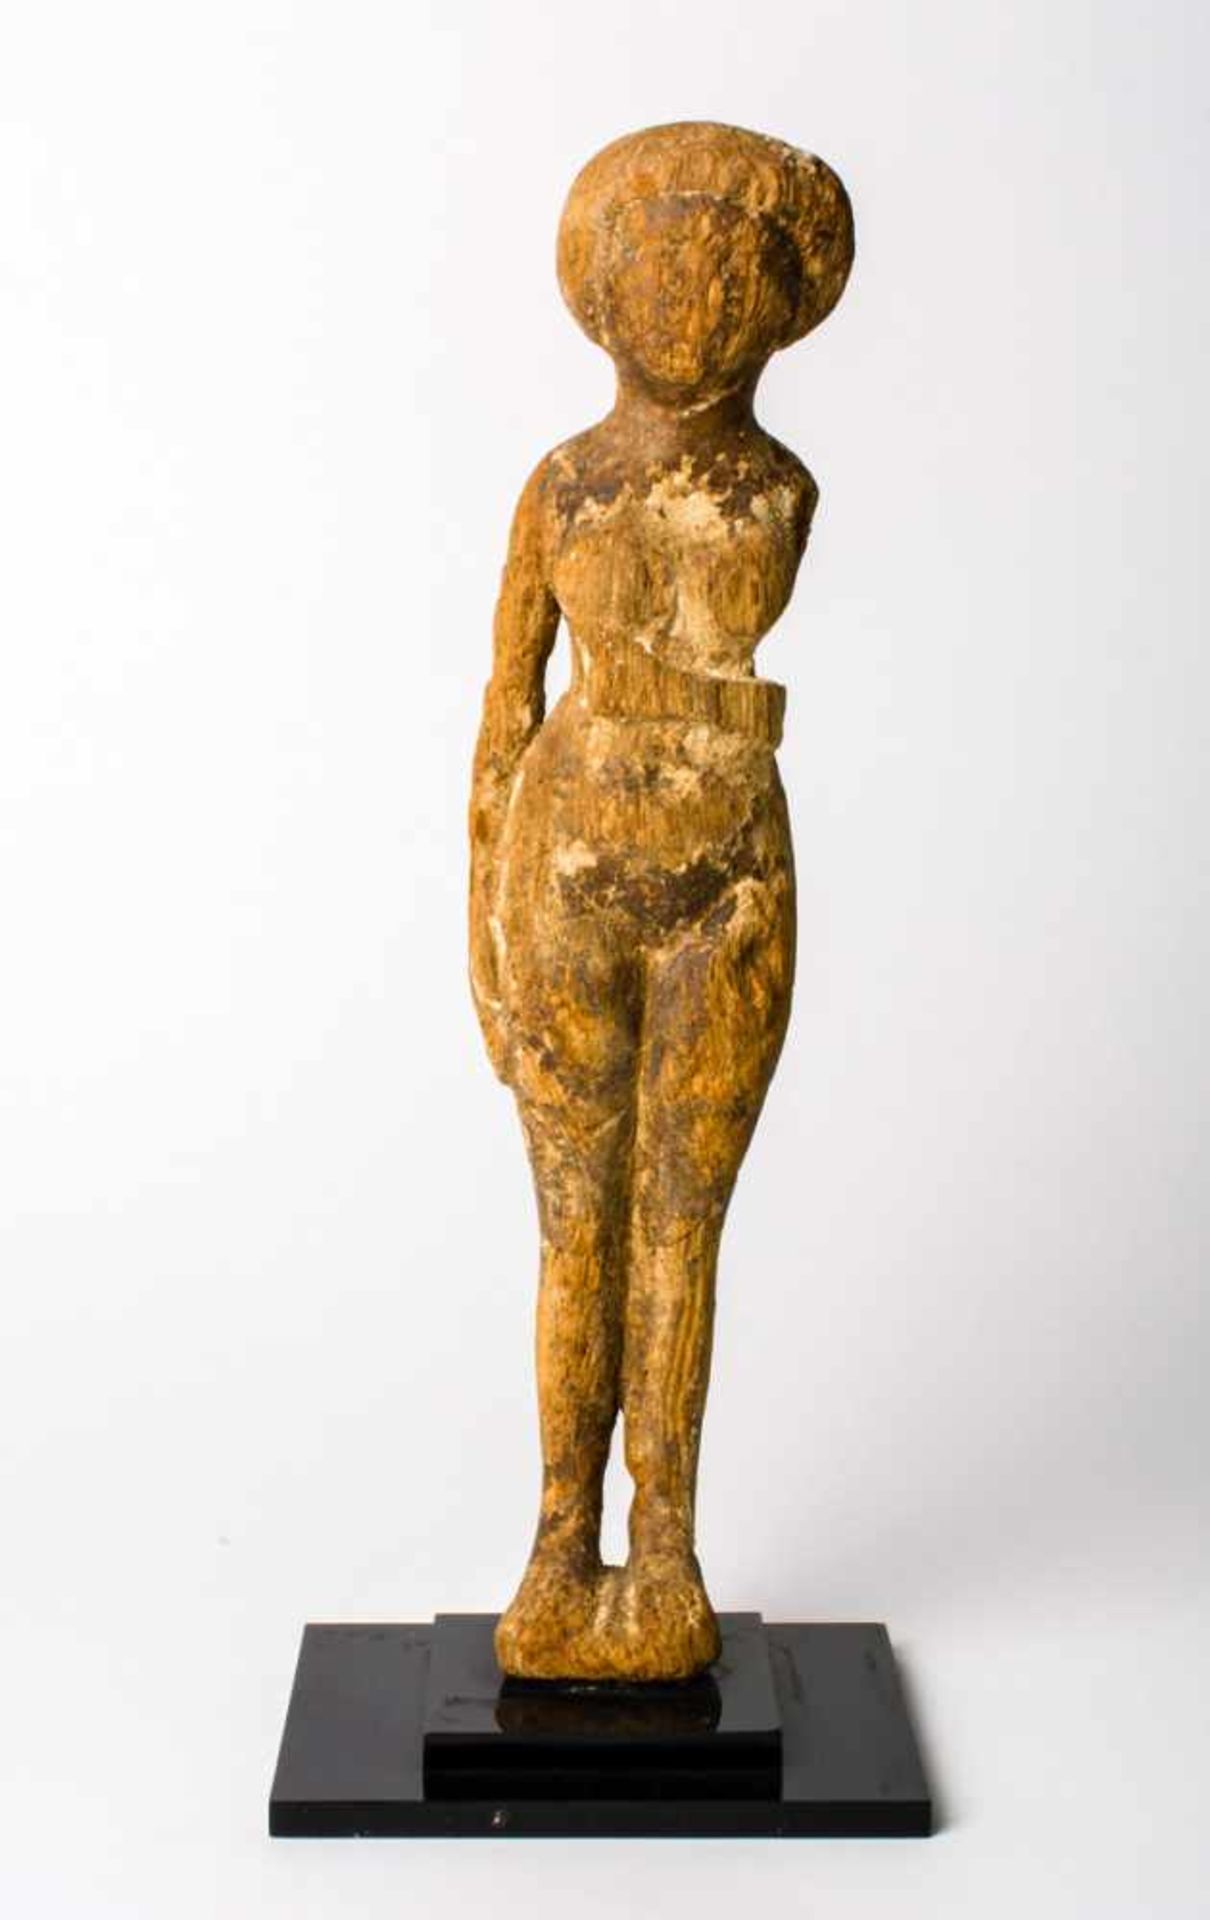 Holzfigur Ursprung und Alter unbekannt 24,5 cm hoch Wooden figure, Provenance and age unknown, 24,